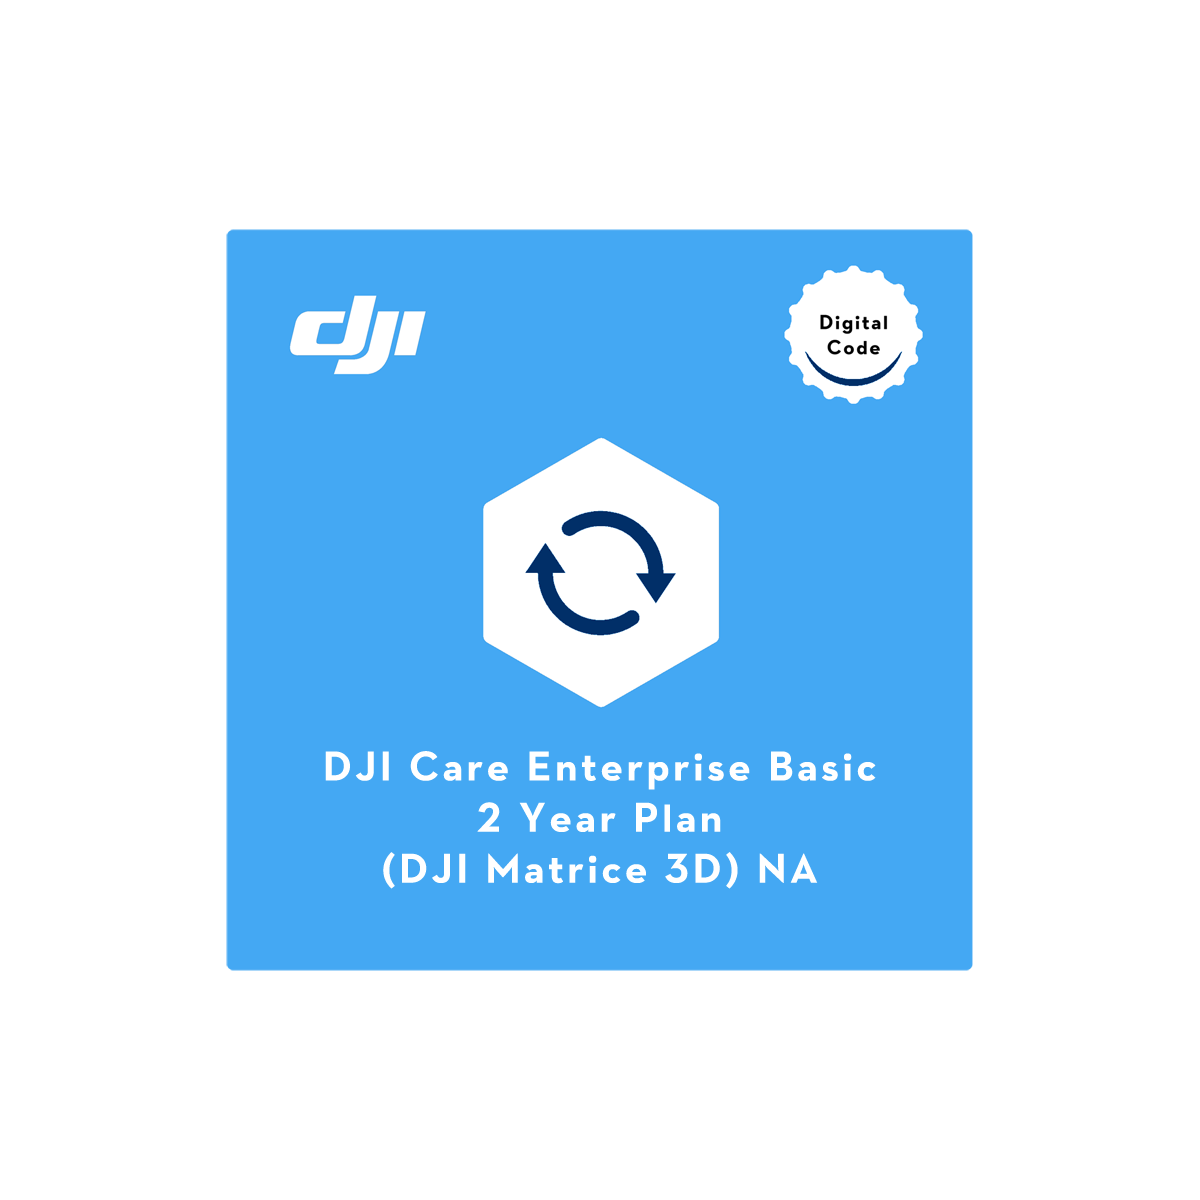 DJI Care Enterprise Basic 2-Year Plan (DJI Matrice 3D) NA